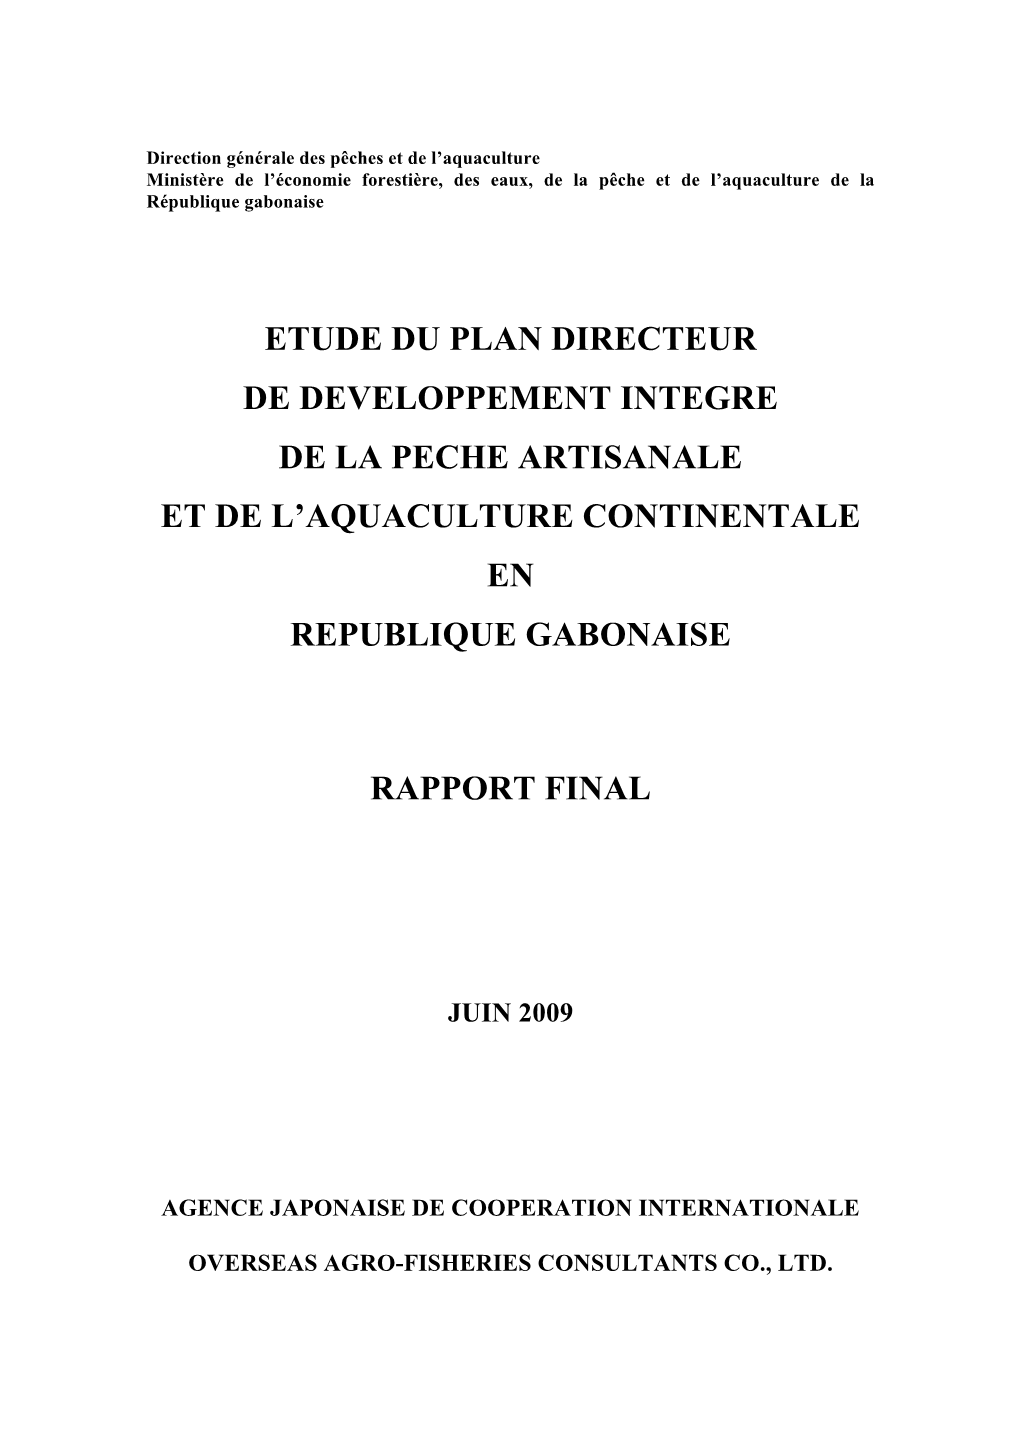 Etude Du Plan Directeur De Developpement Integre De La Peche Artisanale Et De L’Aquaculture Continentale En Republique Gabonaise